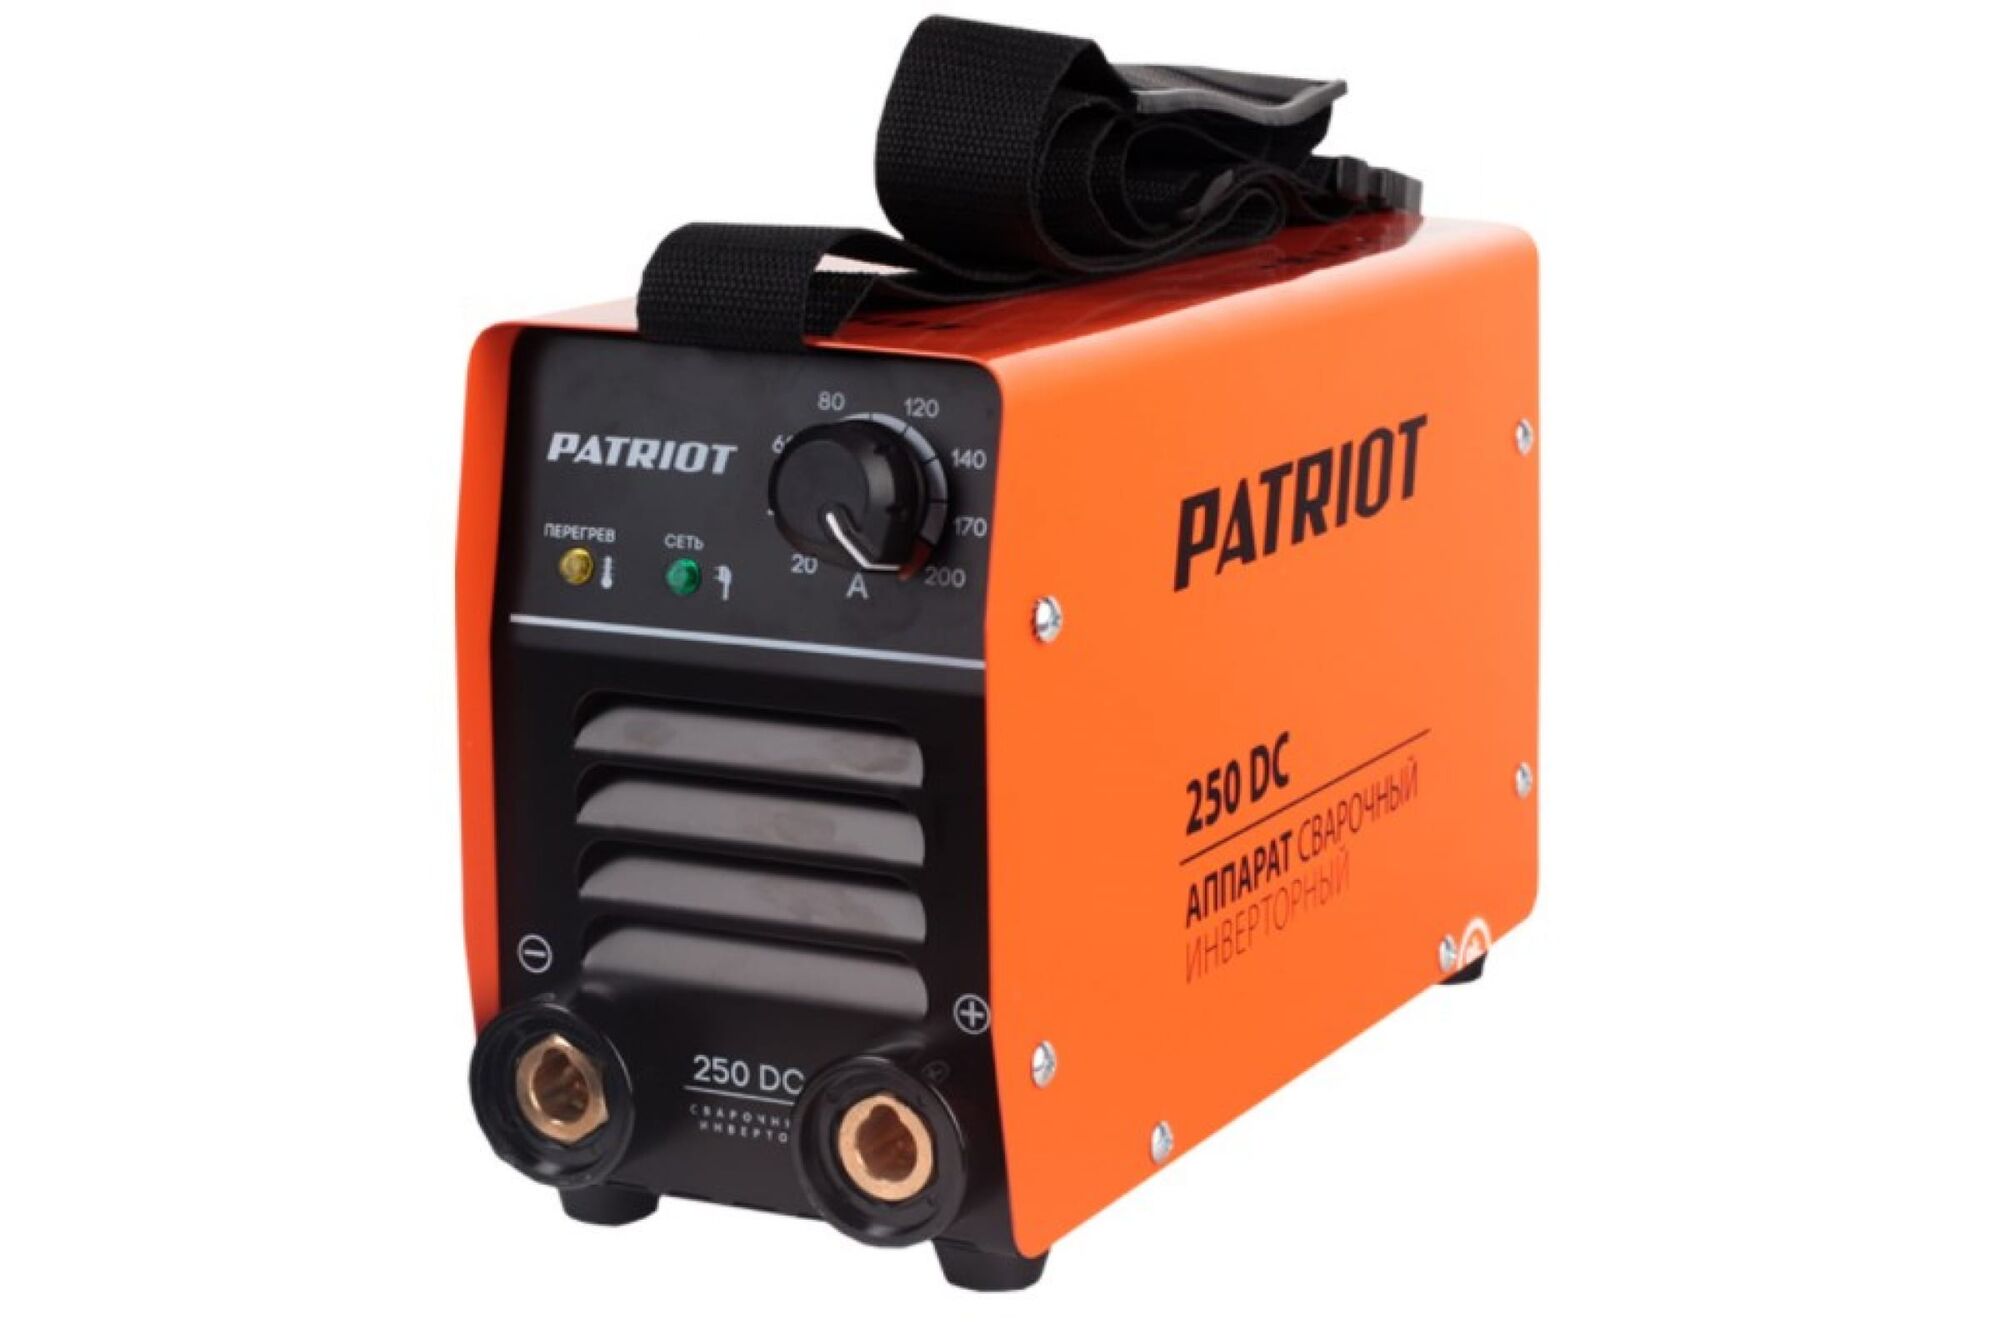 Сварочный аппарат в кейсе PATRIOT 250DC MMA 605302521 Patriot